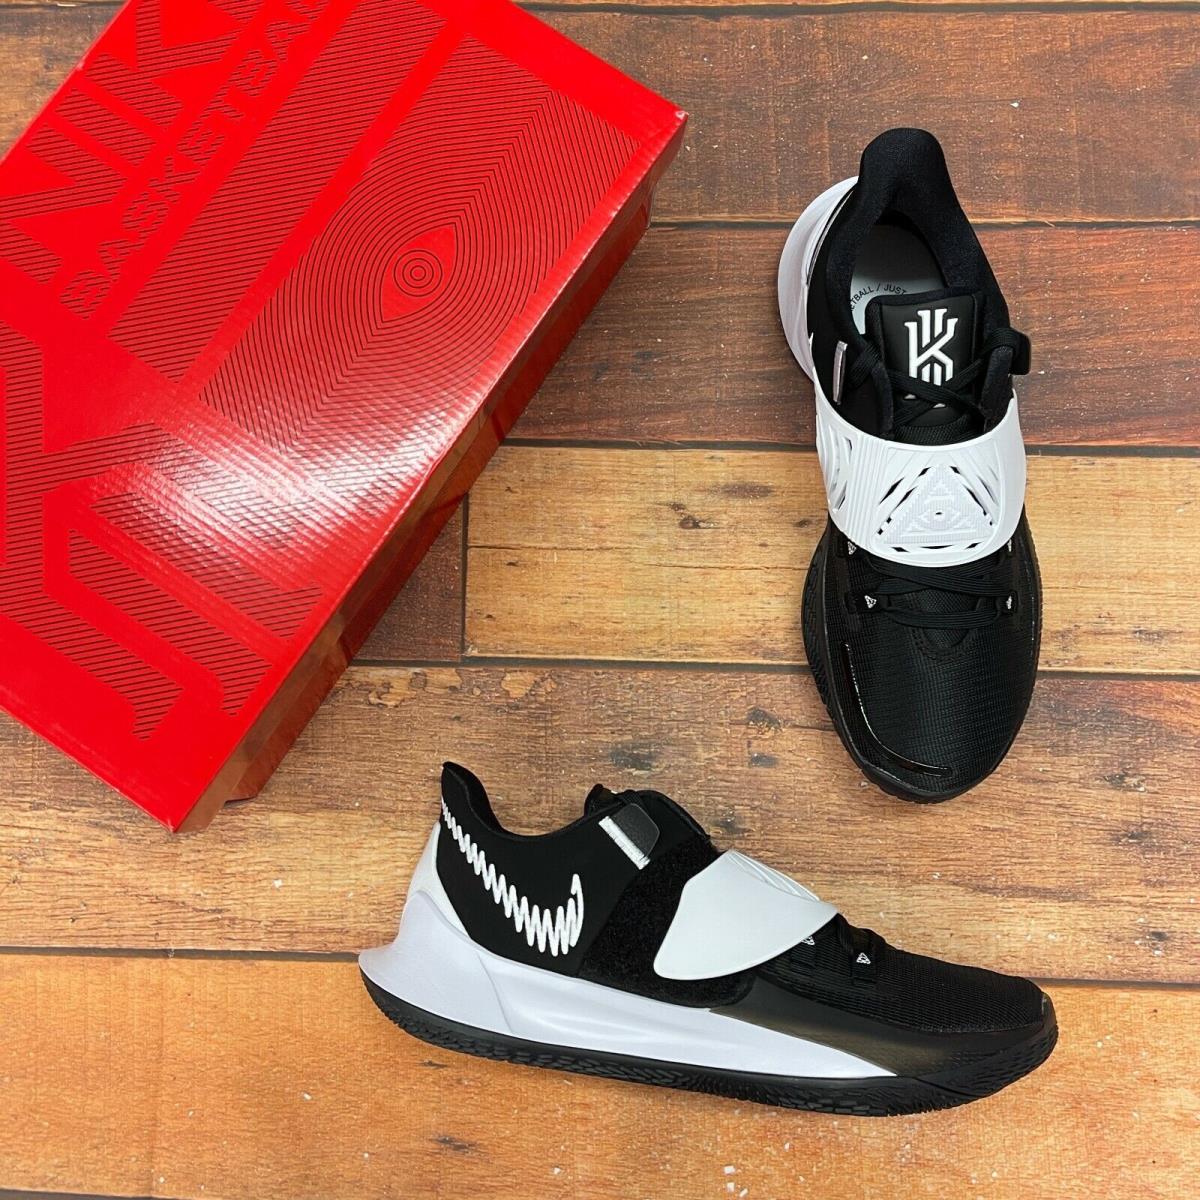 Nike Men`s Kyrie Low 3 TB Promo Black/white Basketball Shoes CW4147-001